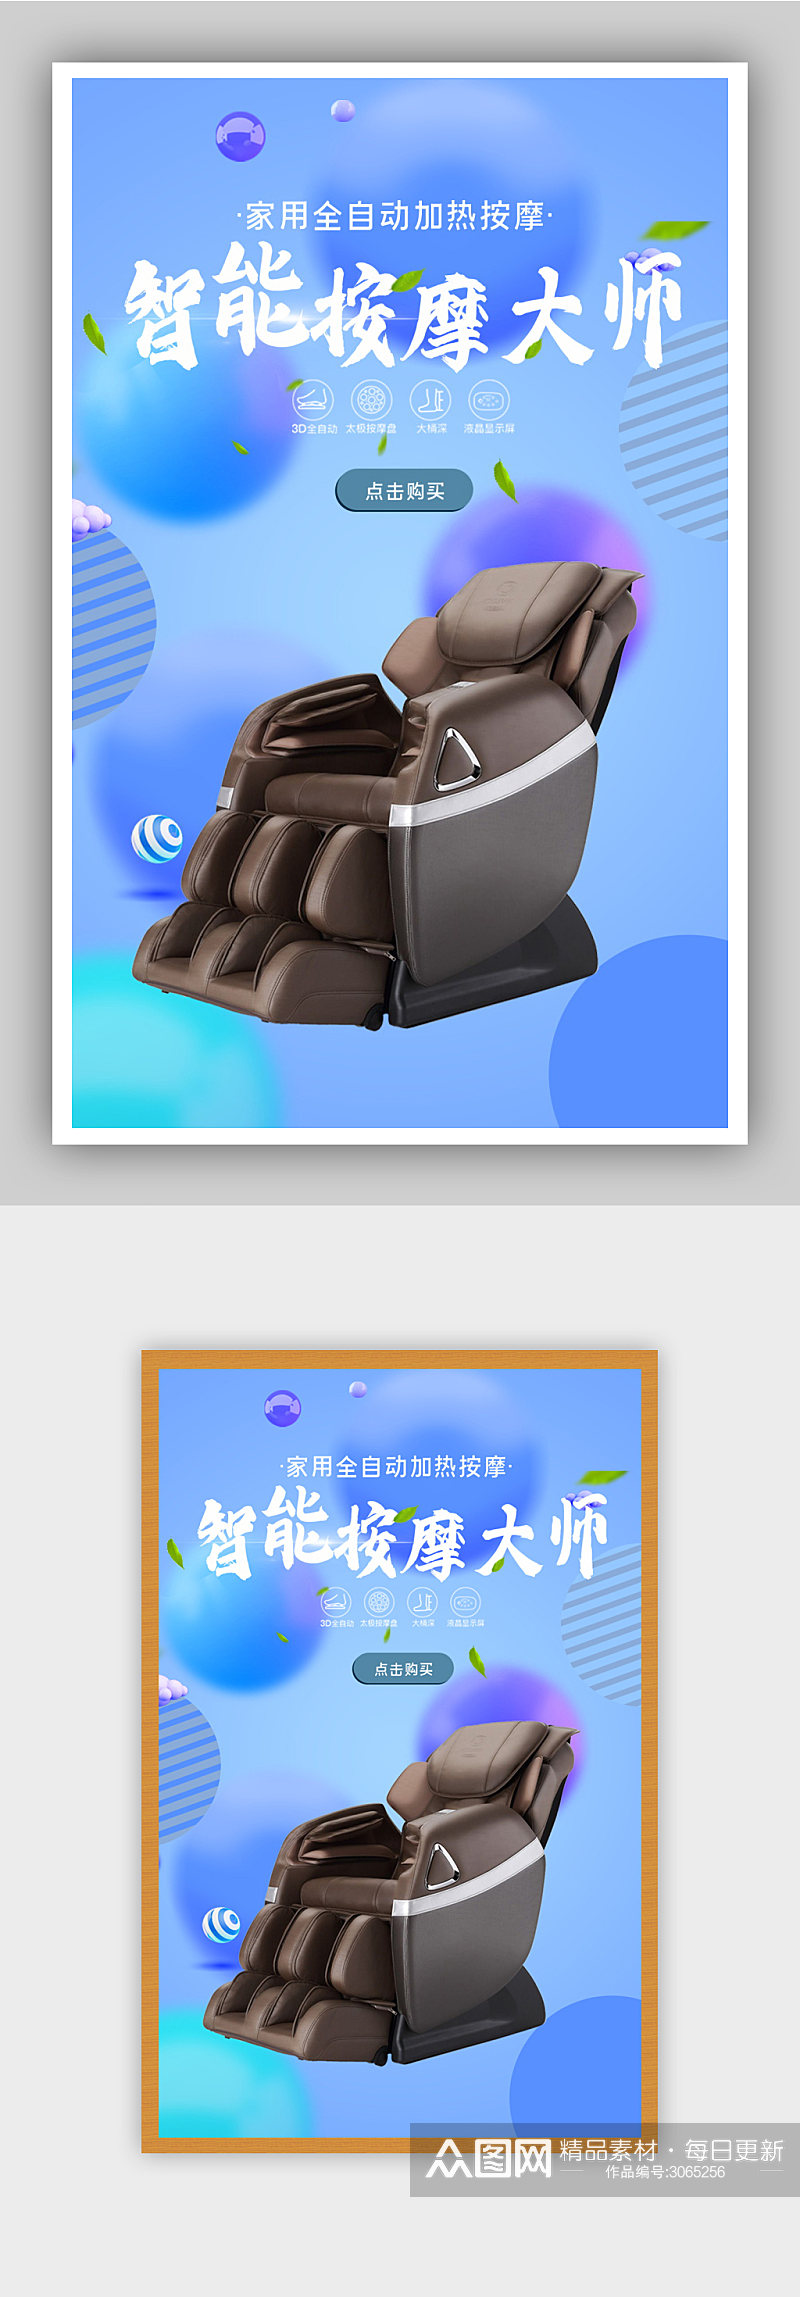 家用智能按摩椅电商背景海报素材